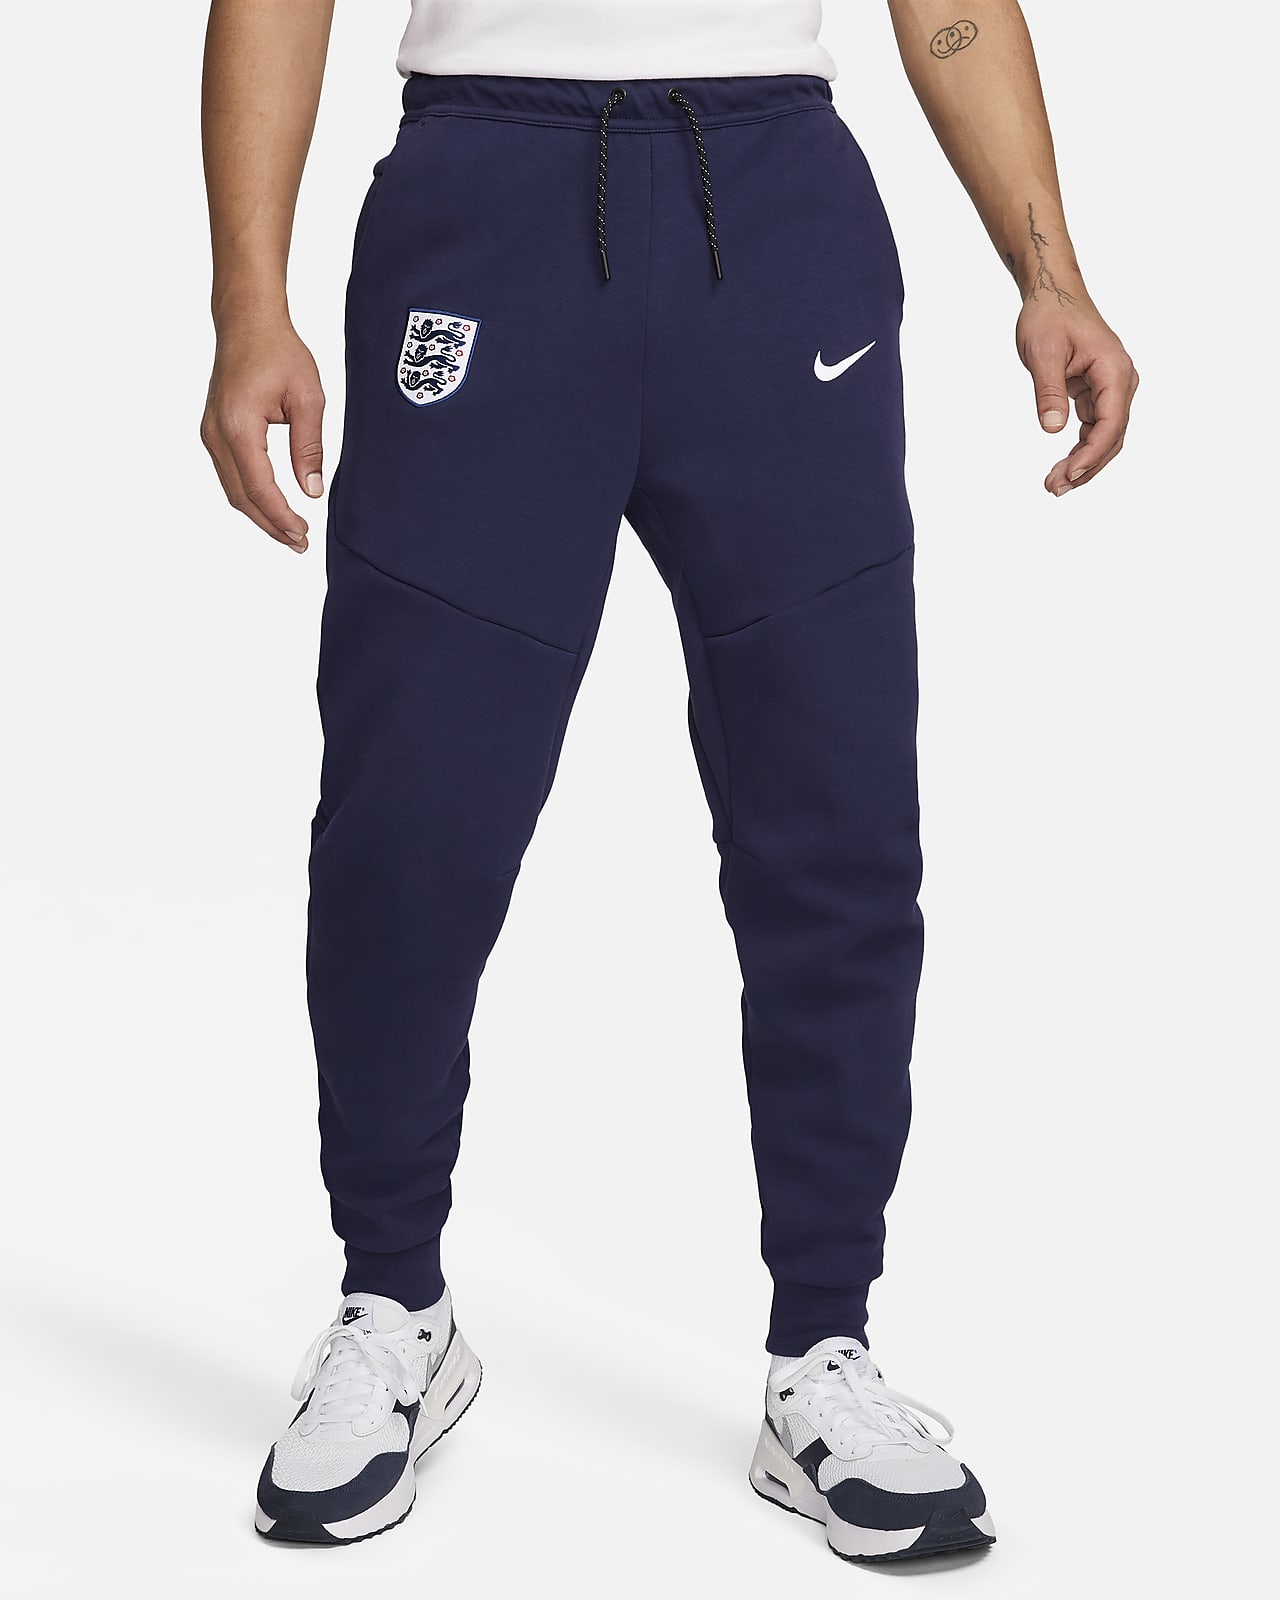 England Tech Fleece Men's Nike Football Joggers